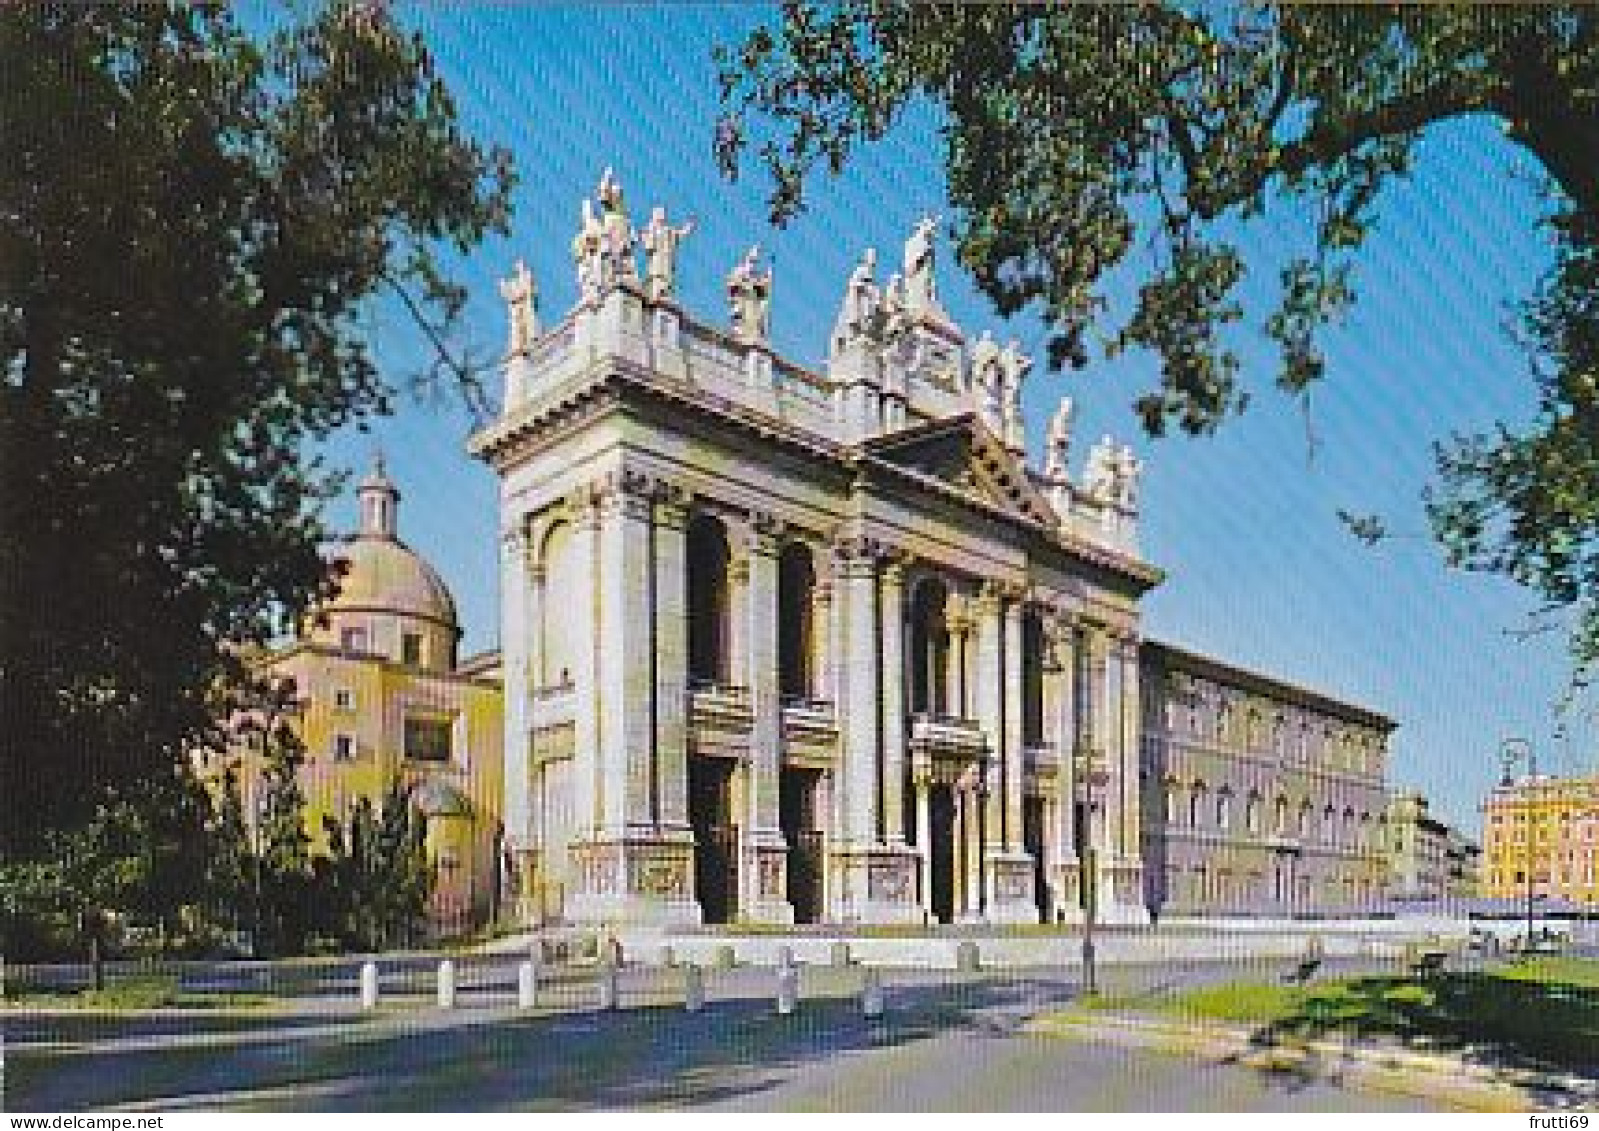 AK 216867 ITALY - Roma - Basilica S. Giovanni In Laterano - Chiese